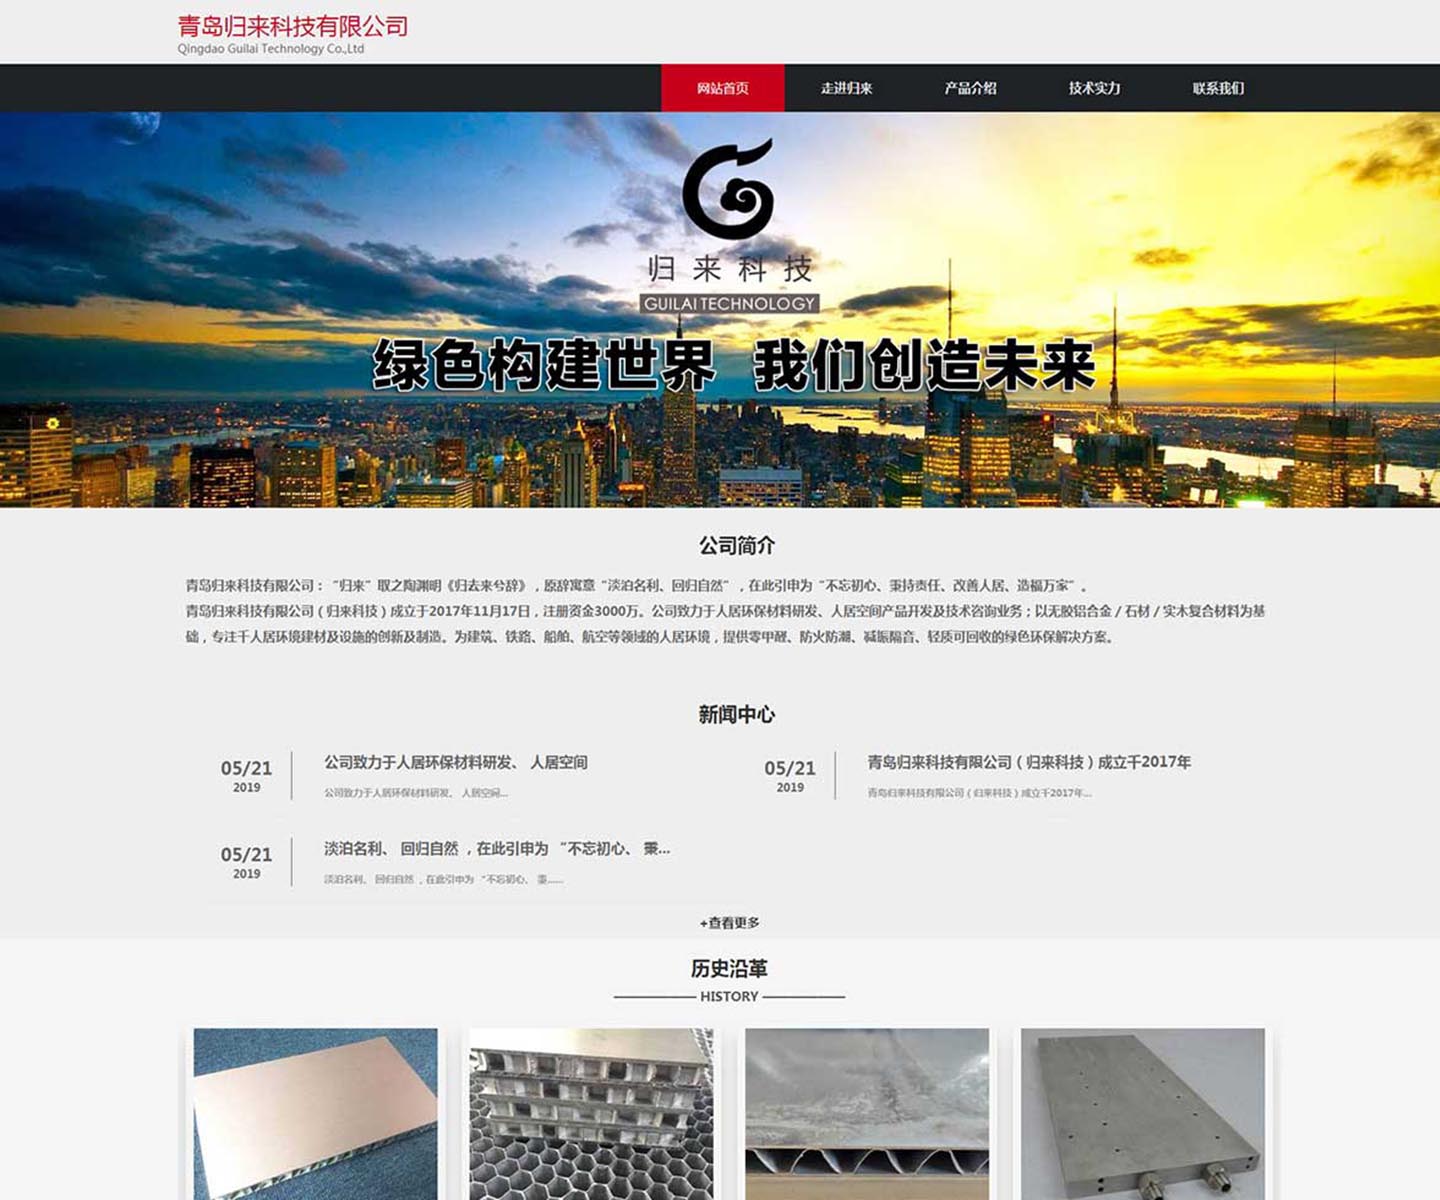 归来科技公司-中文版官方网站